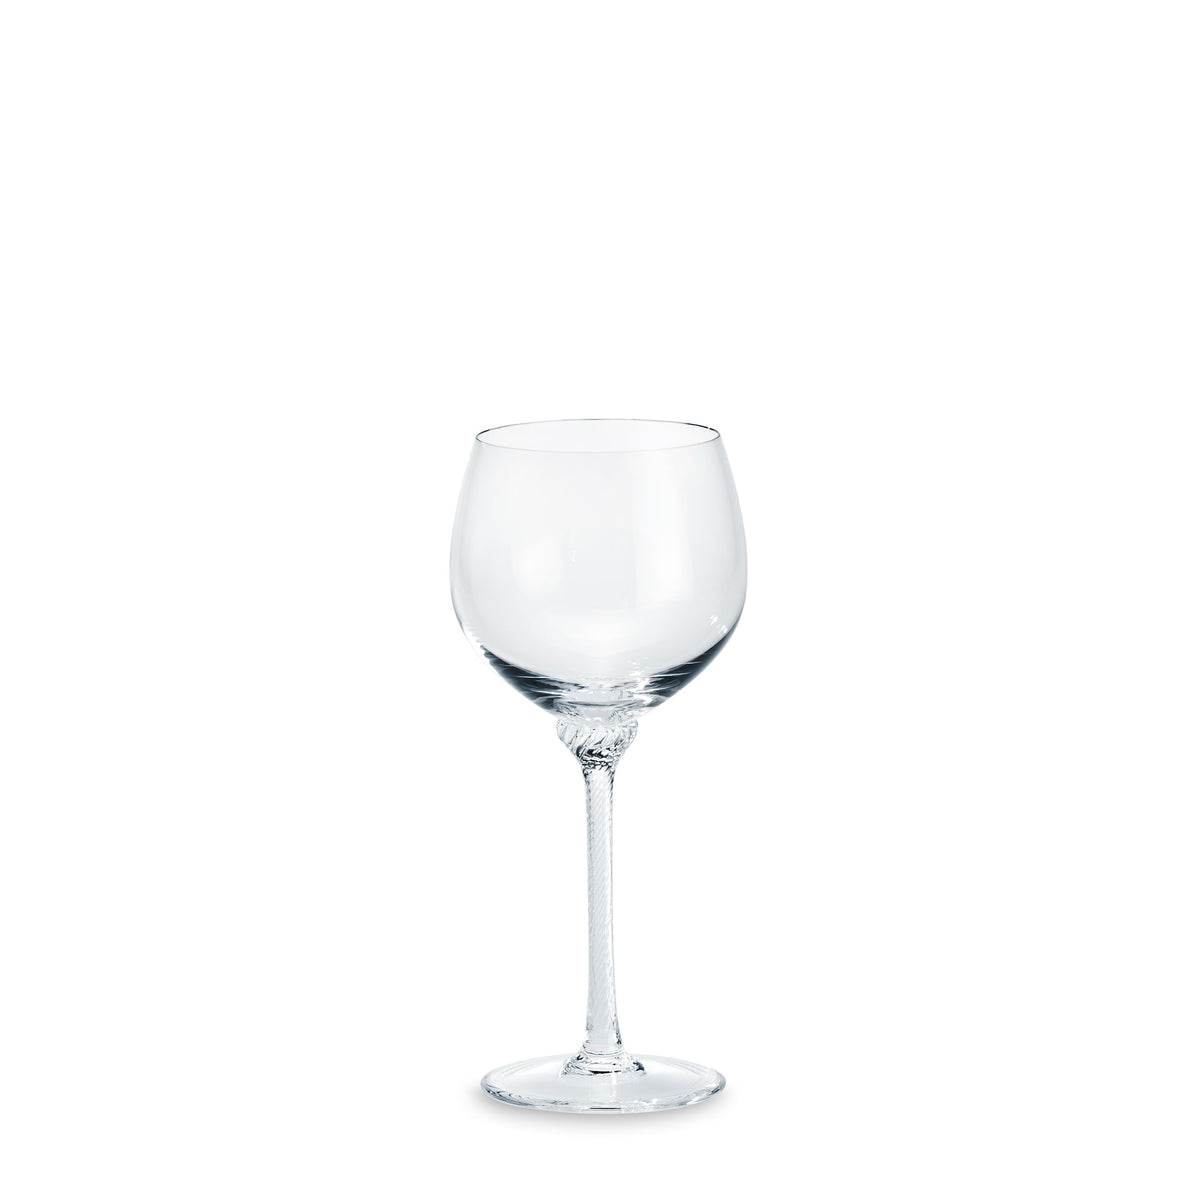 Château Bourgogne-Glas - ABVERKAUF - 50% REDUZIERT